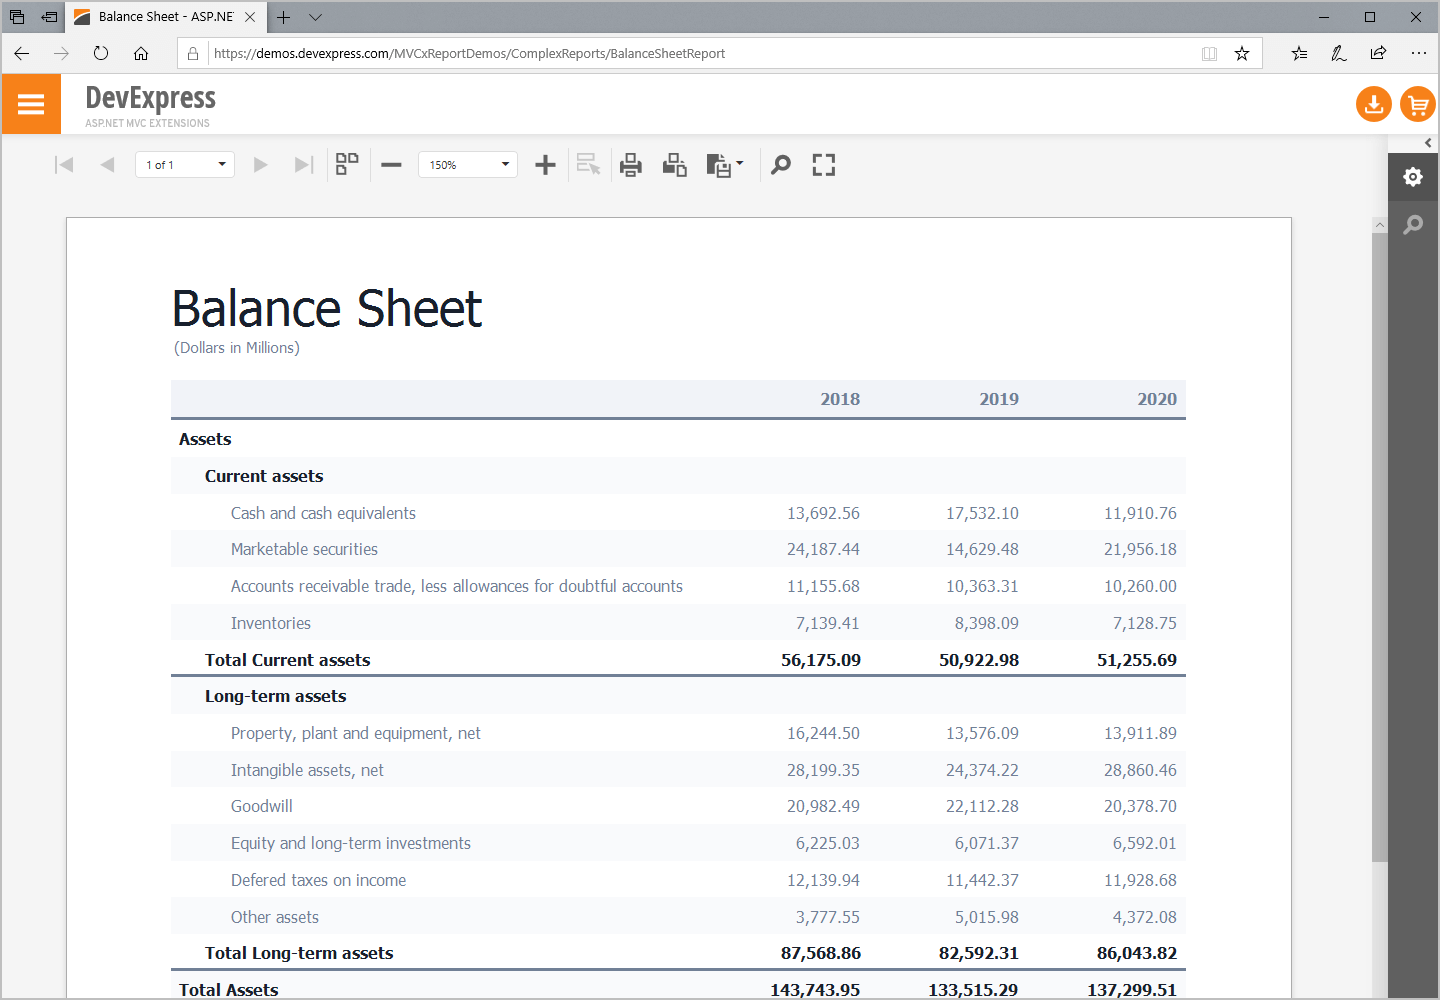 Balance Sheet - ASP.NET Reporting, DevExpress